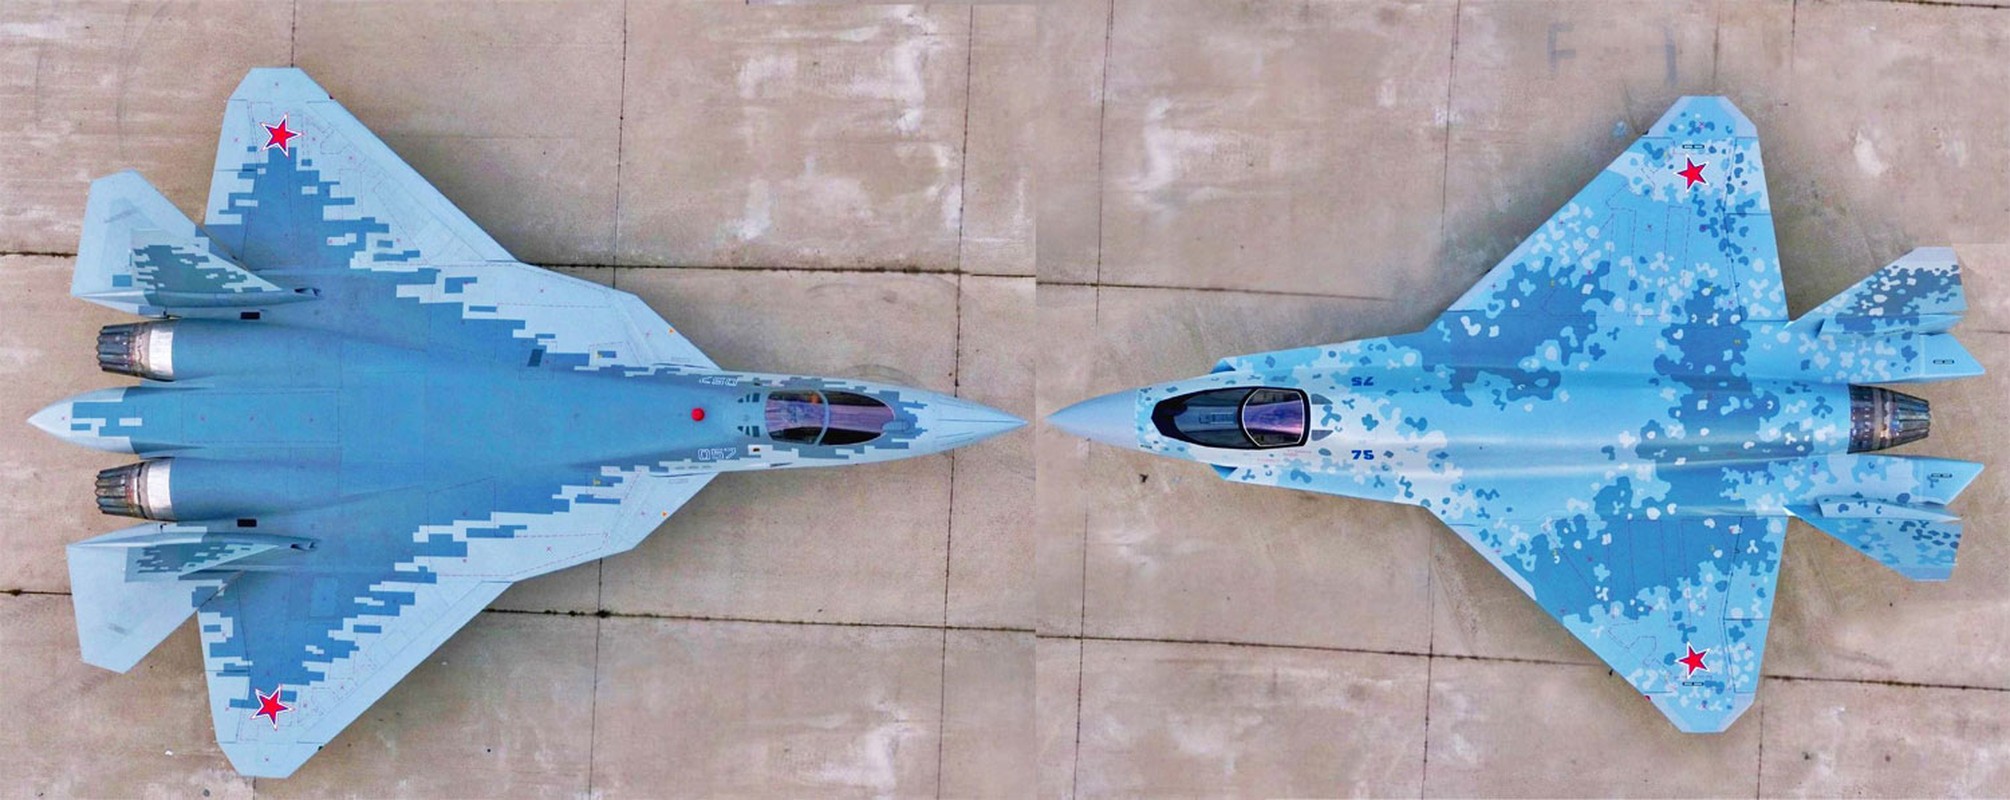 My se khong ban F-35, An Do chi con mot lua chon duy nhat-Hinh-12